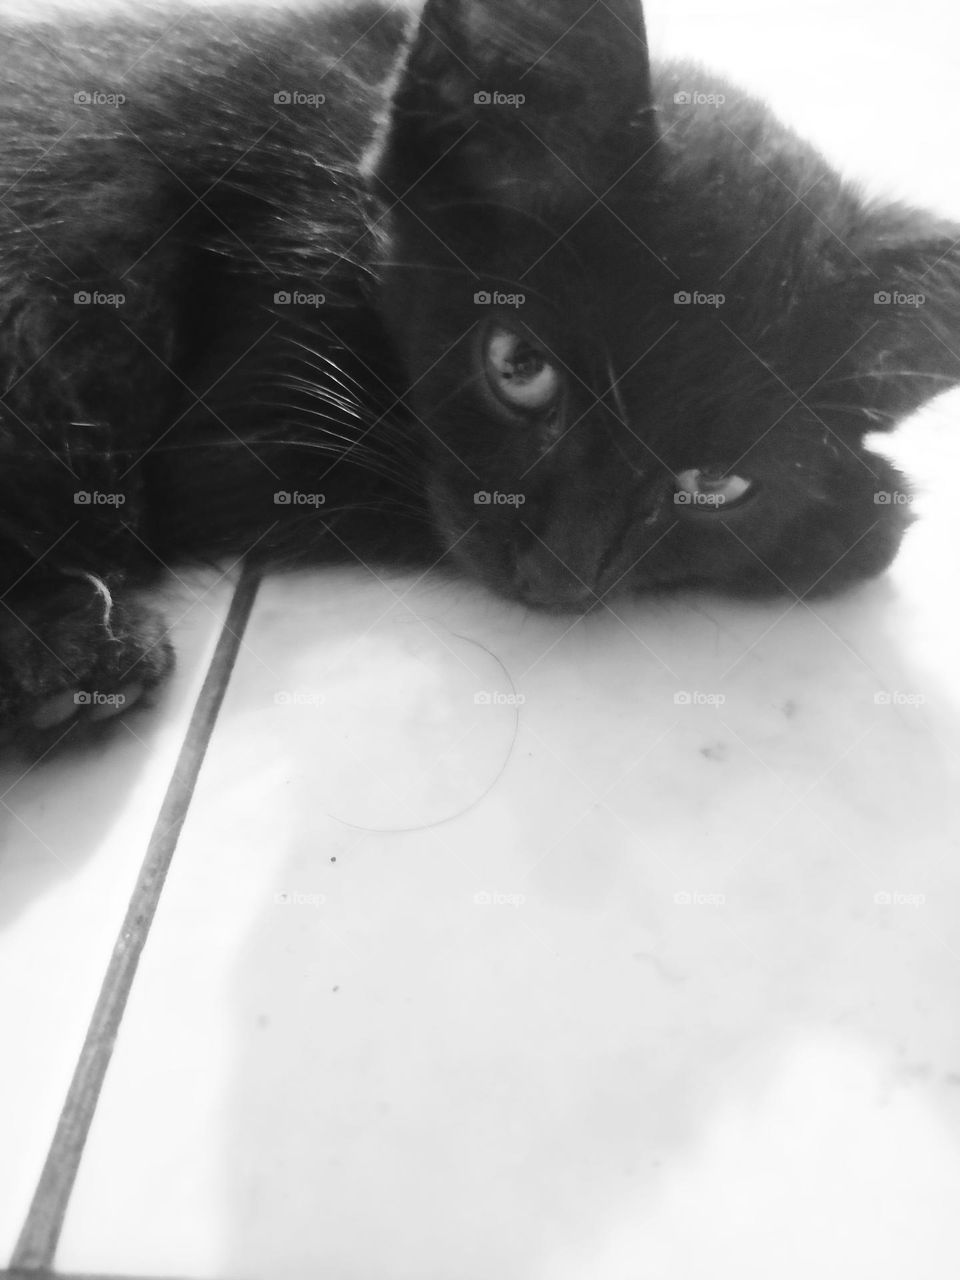 A Black Kitten in The White Floor